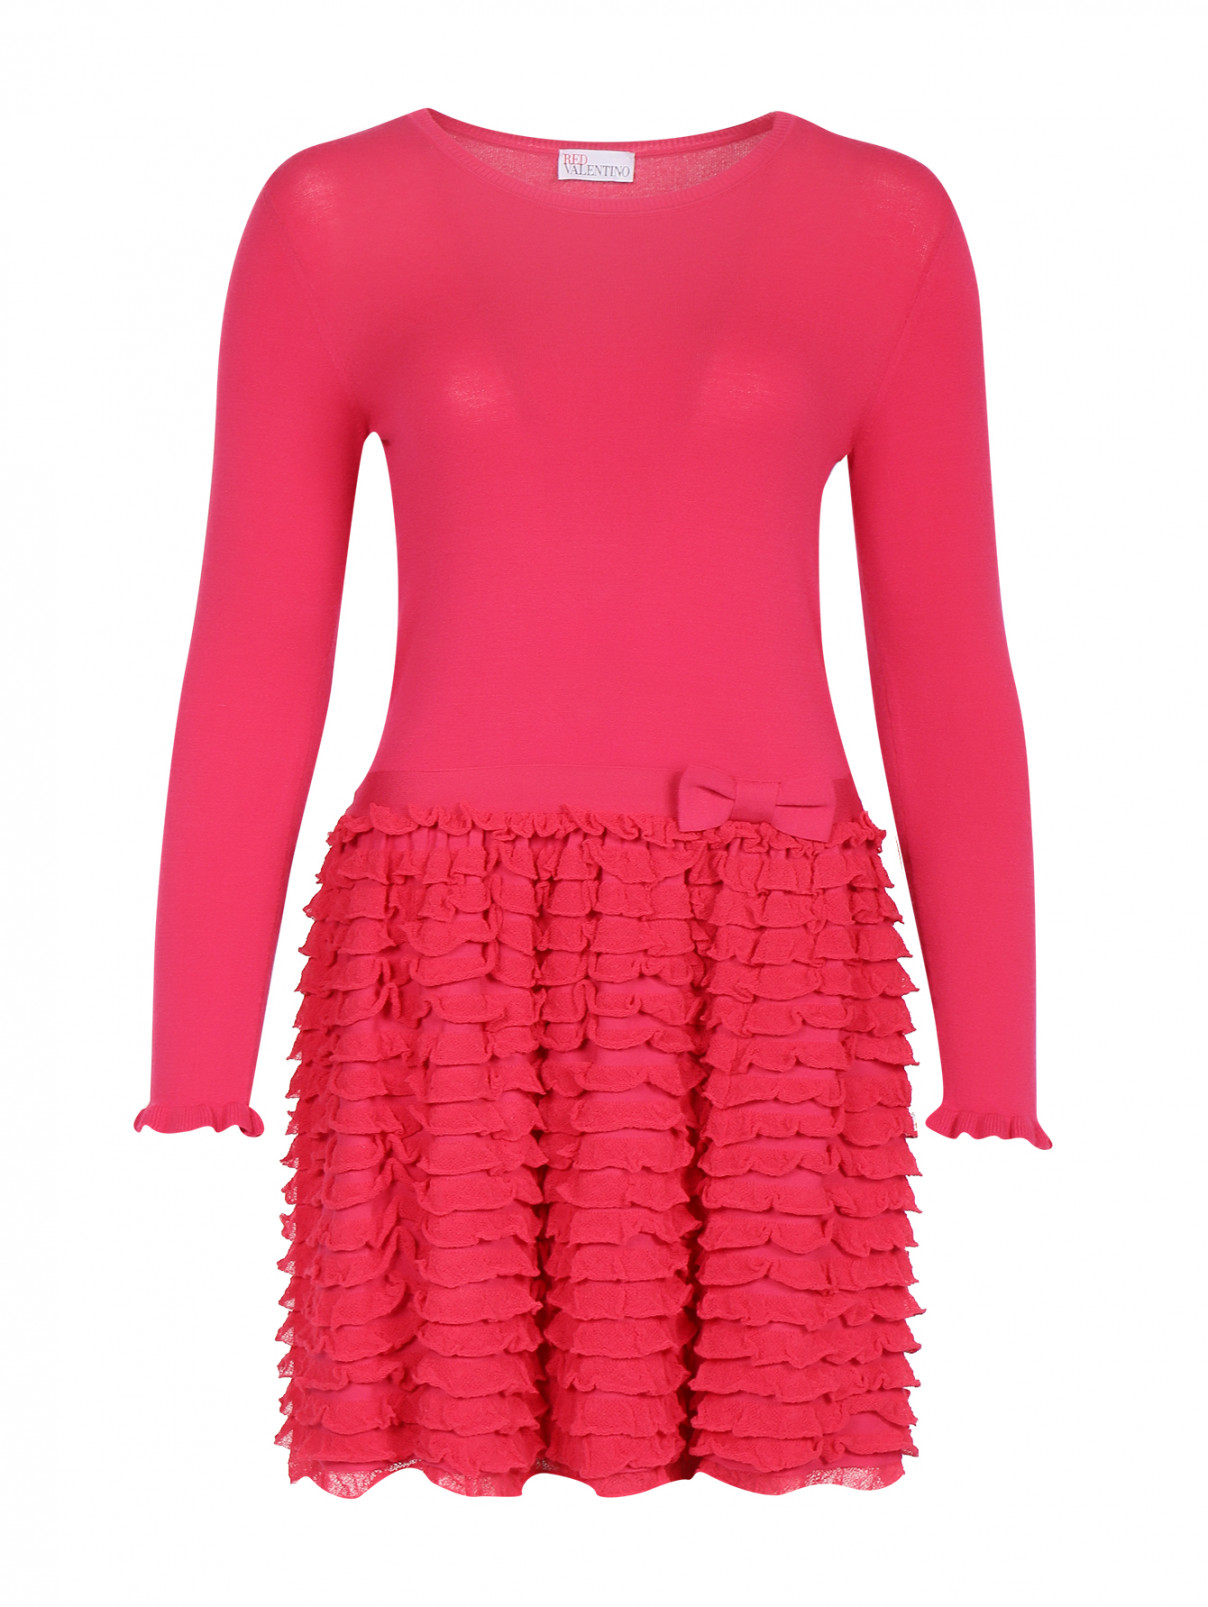 Трикотажное платье с оборками Red Valentino  –  Общий вид  – Цвет:  Розовый